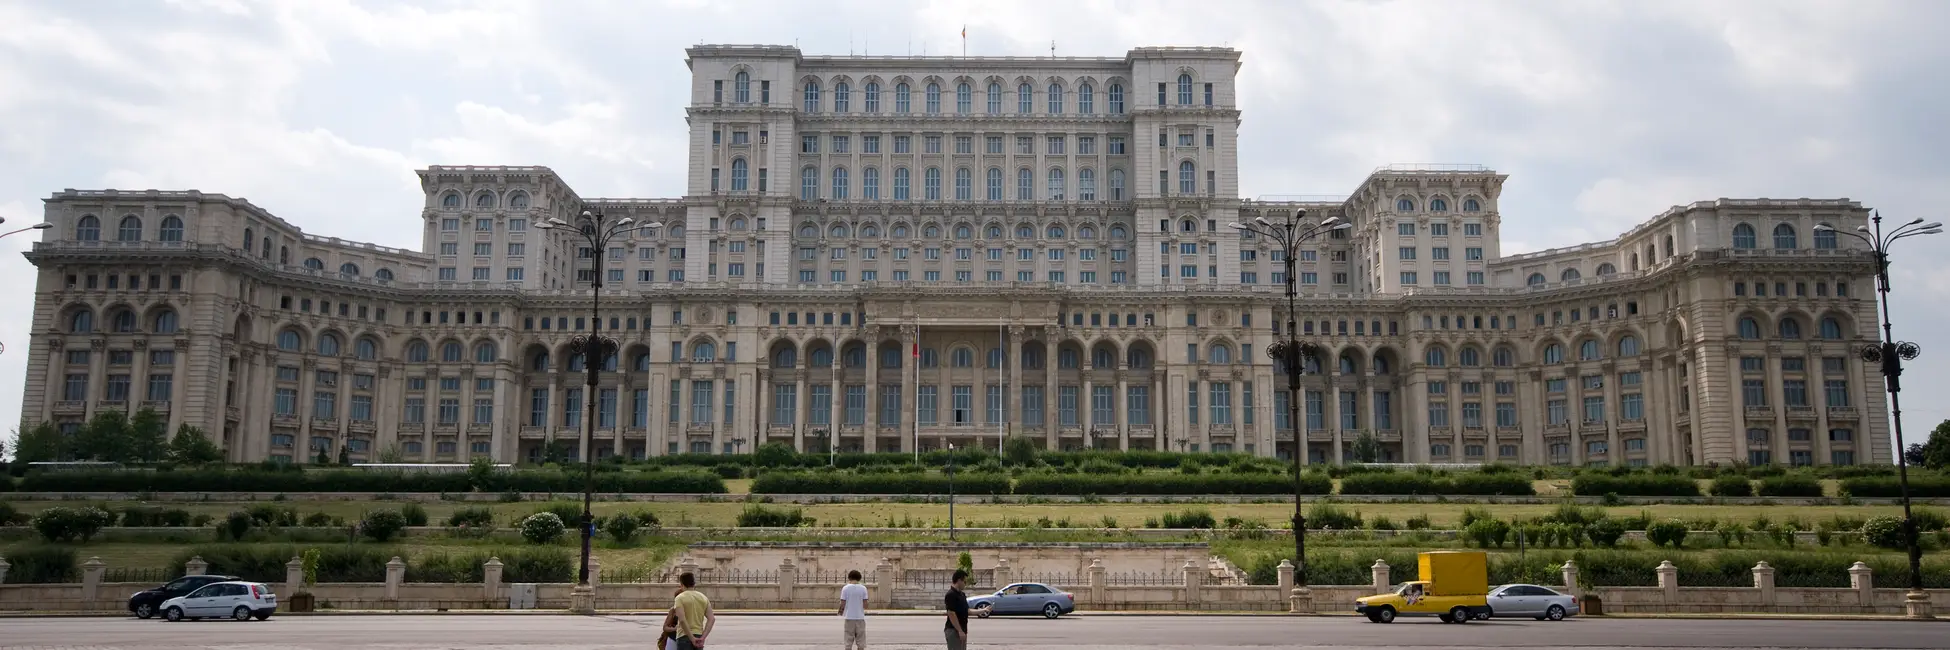 Le palais du parlement de Bucarest 